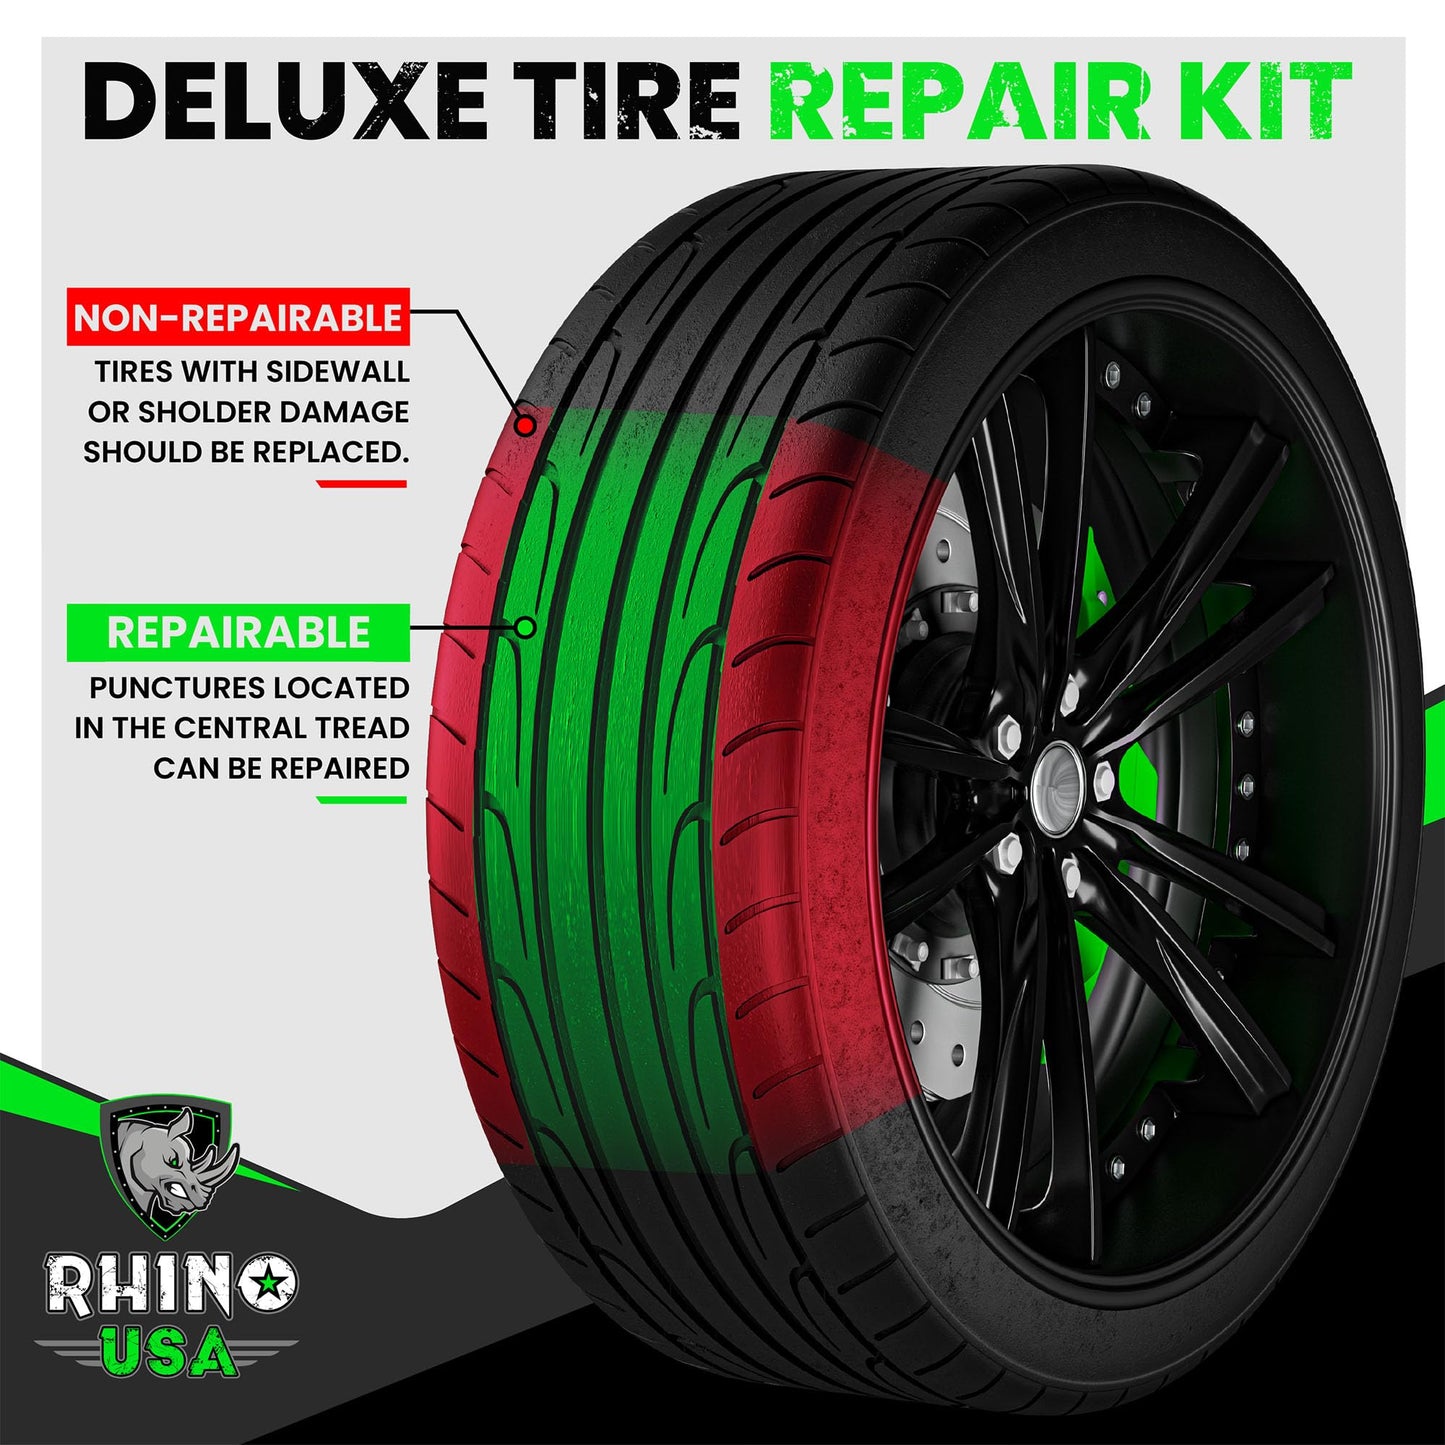 Tire Plug Repair Kit (86-Piece) for Cars, Motorcycles, ATV, UTV, RV